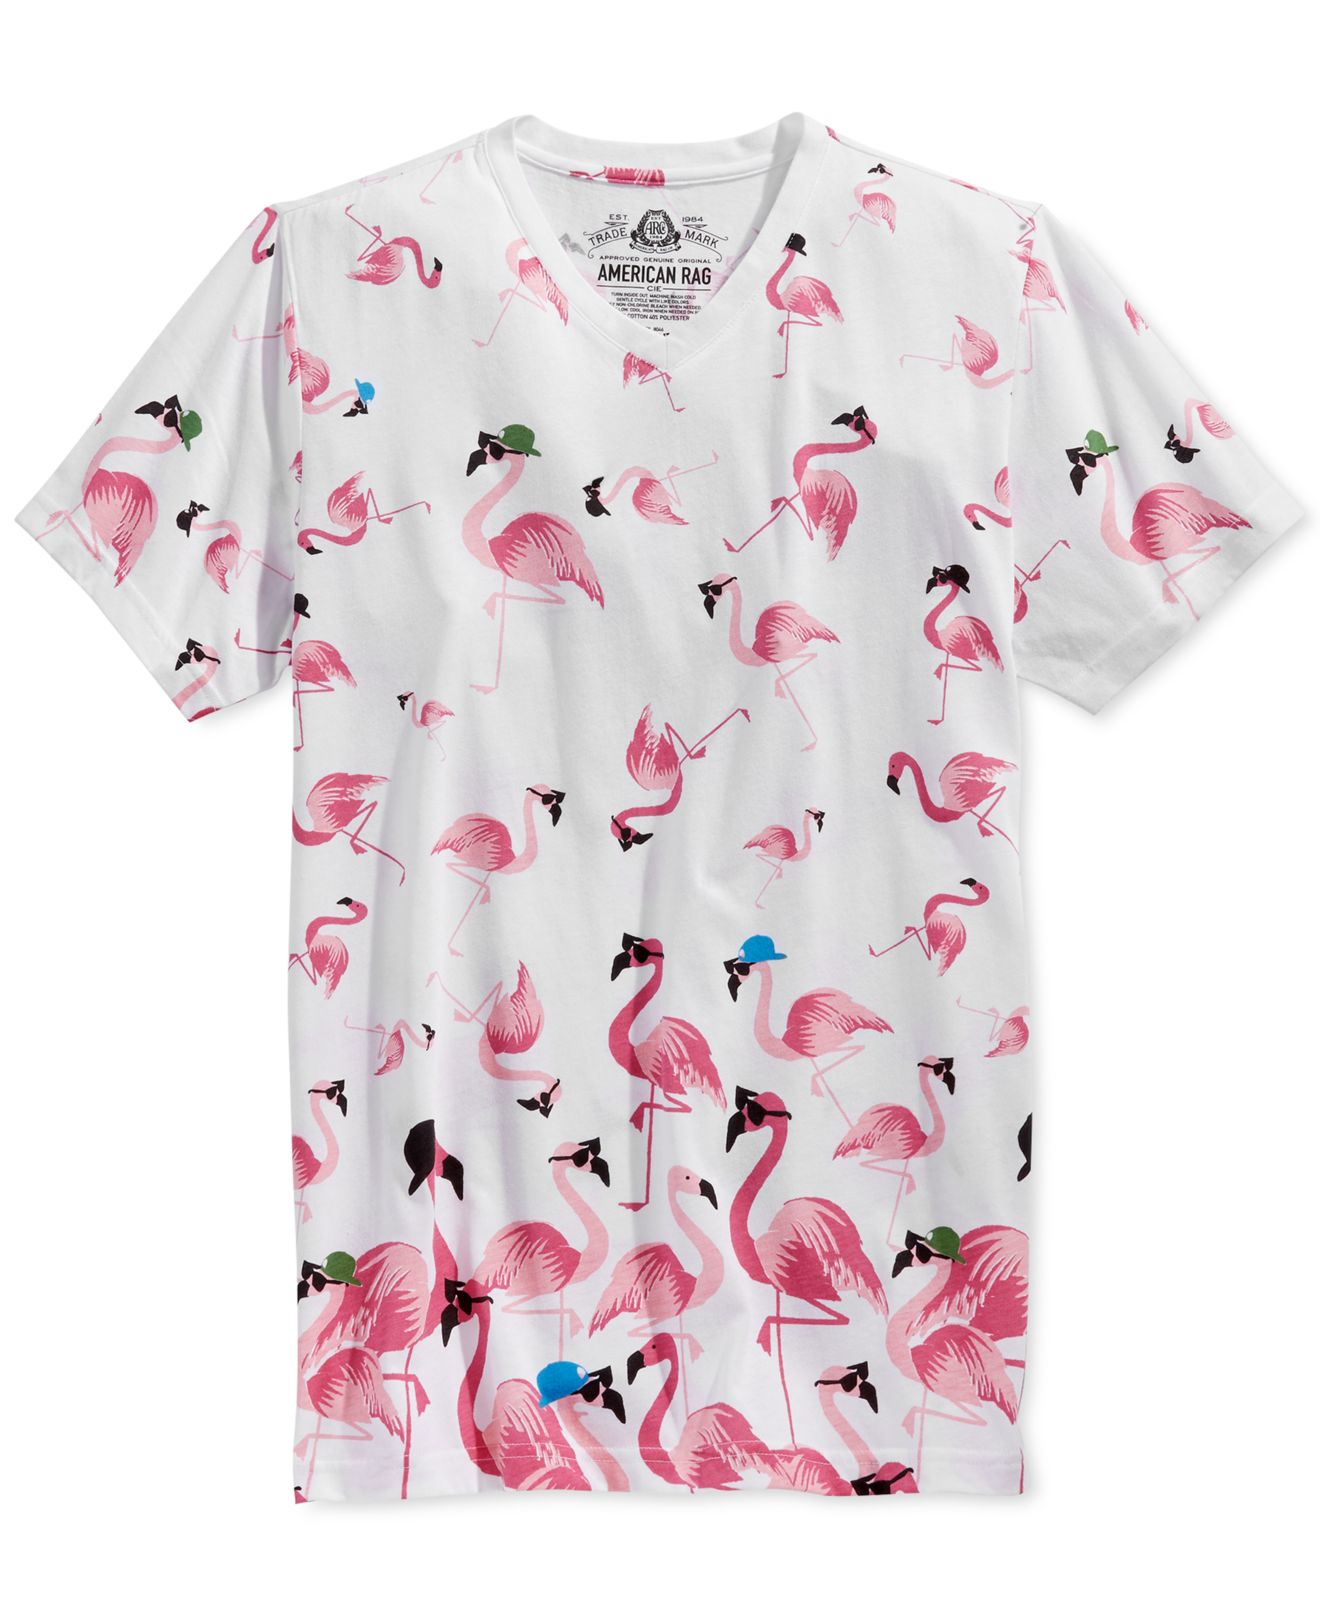 Flamingo Merch New - Embroidered Flamingo Shirt | Flamingo ...